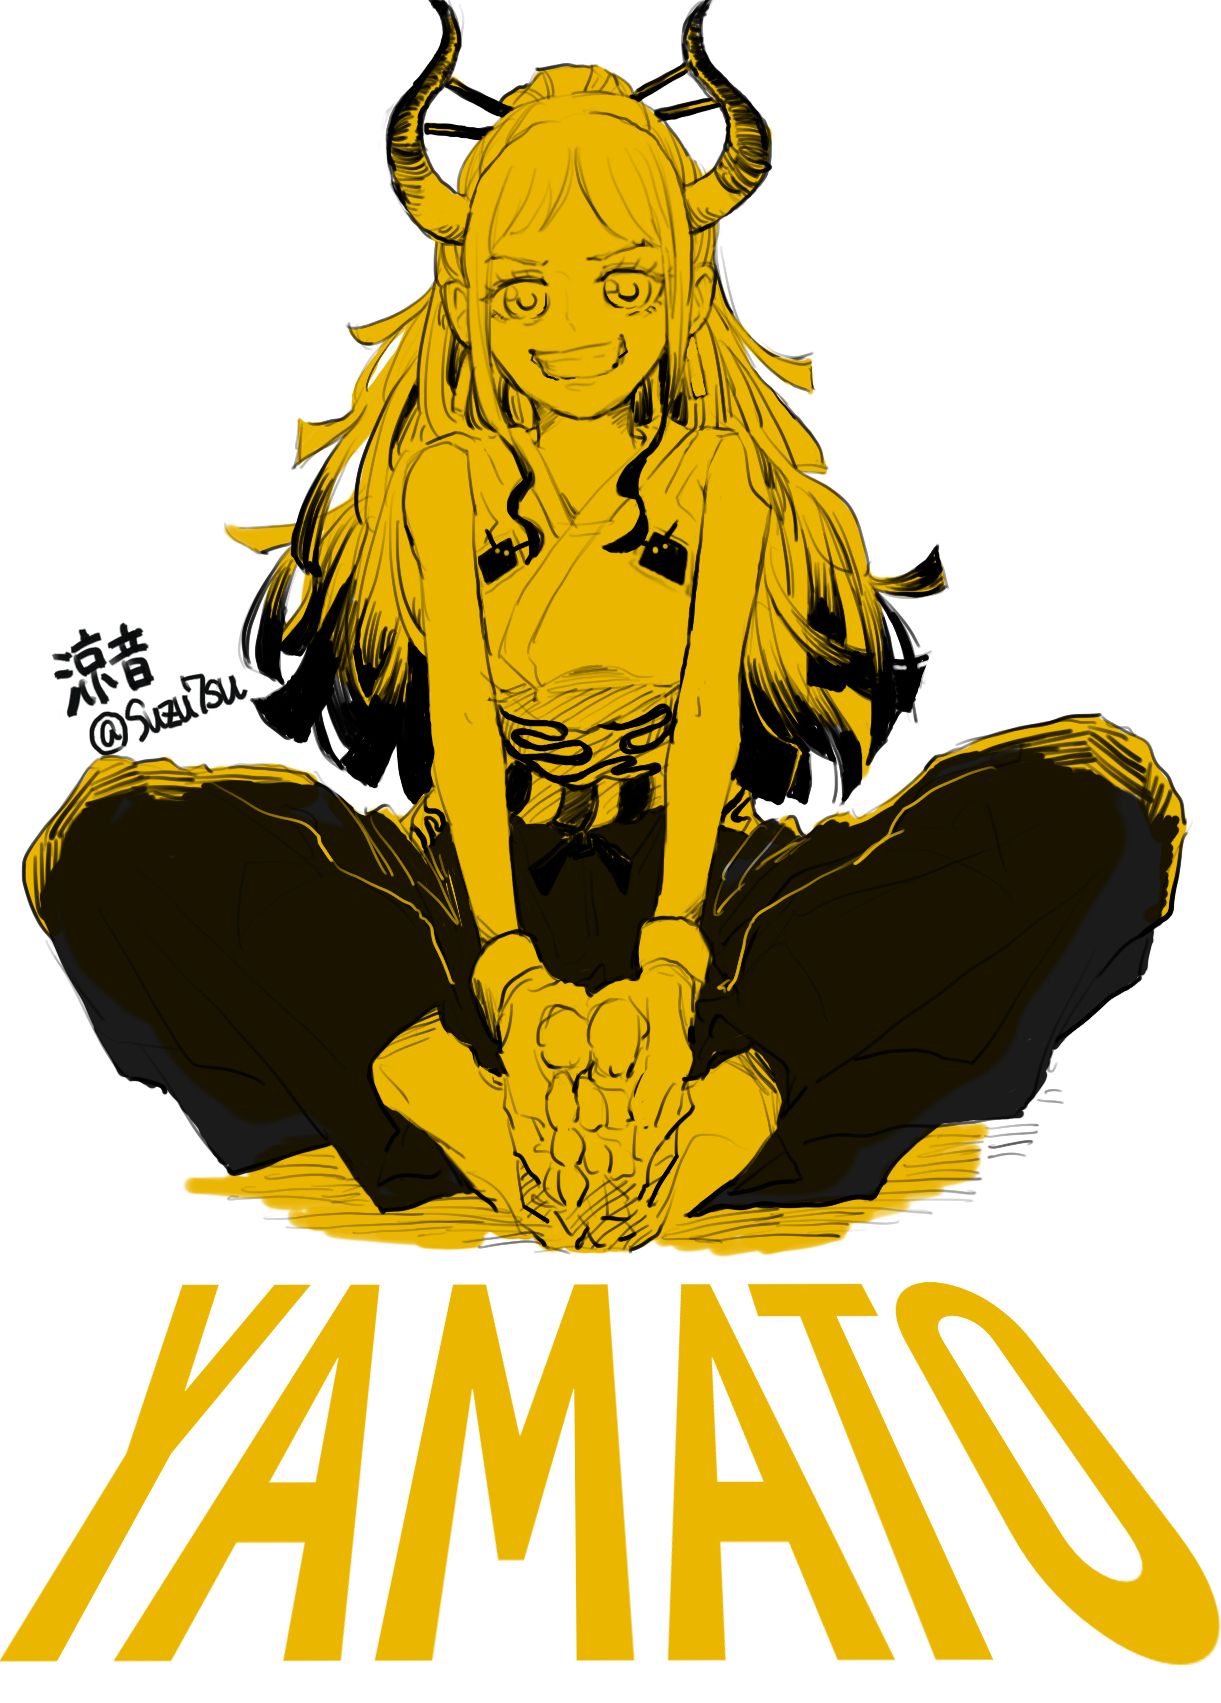 Yamato (One Piece) Image Anime Image Board